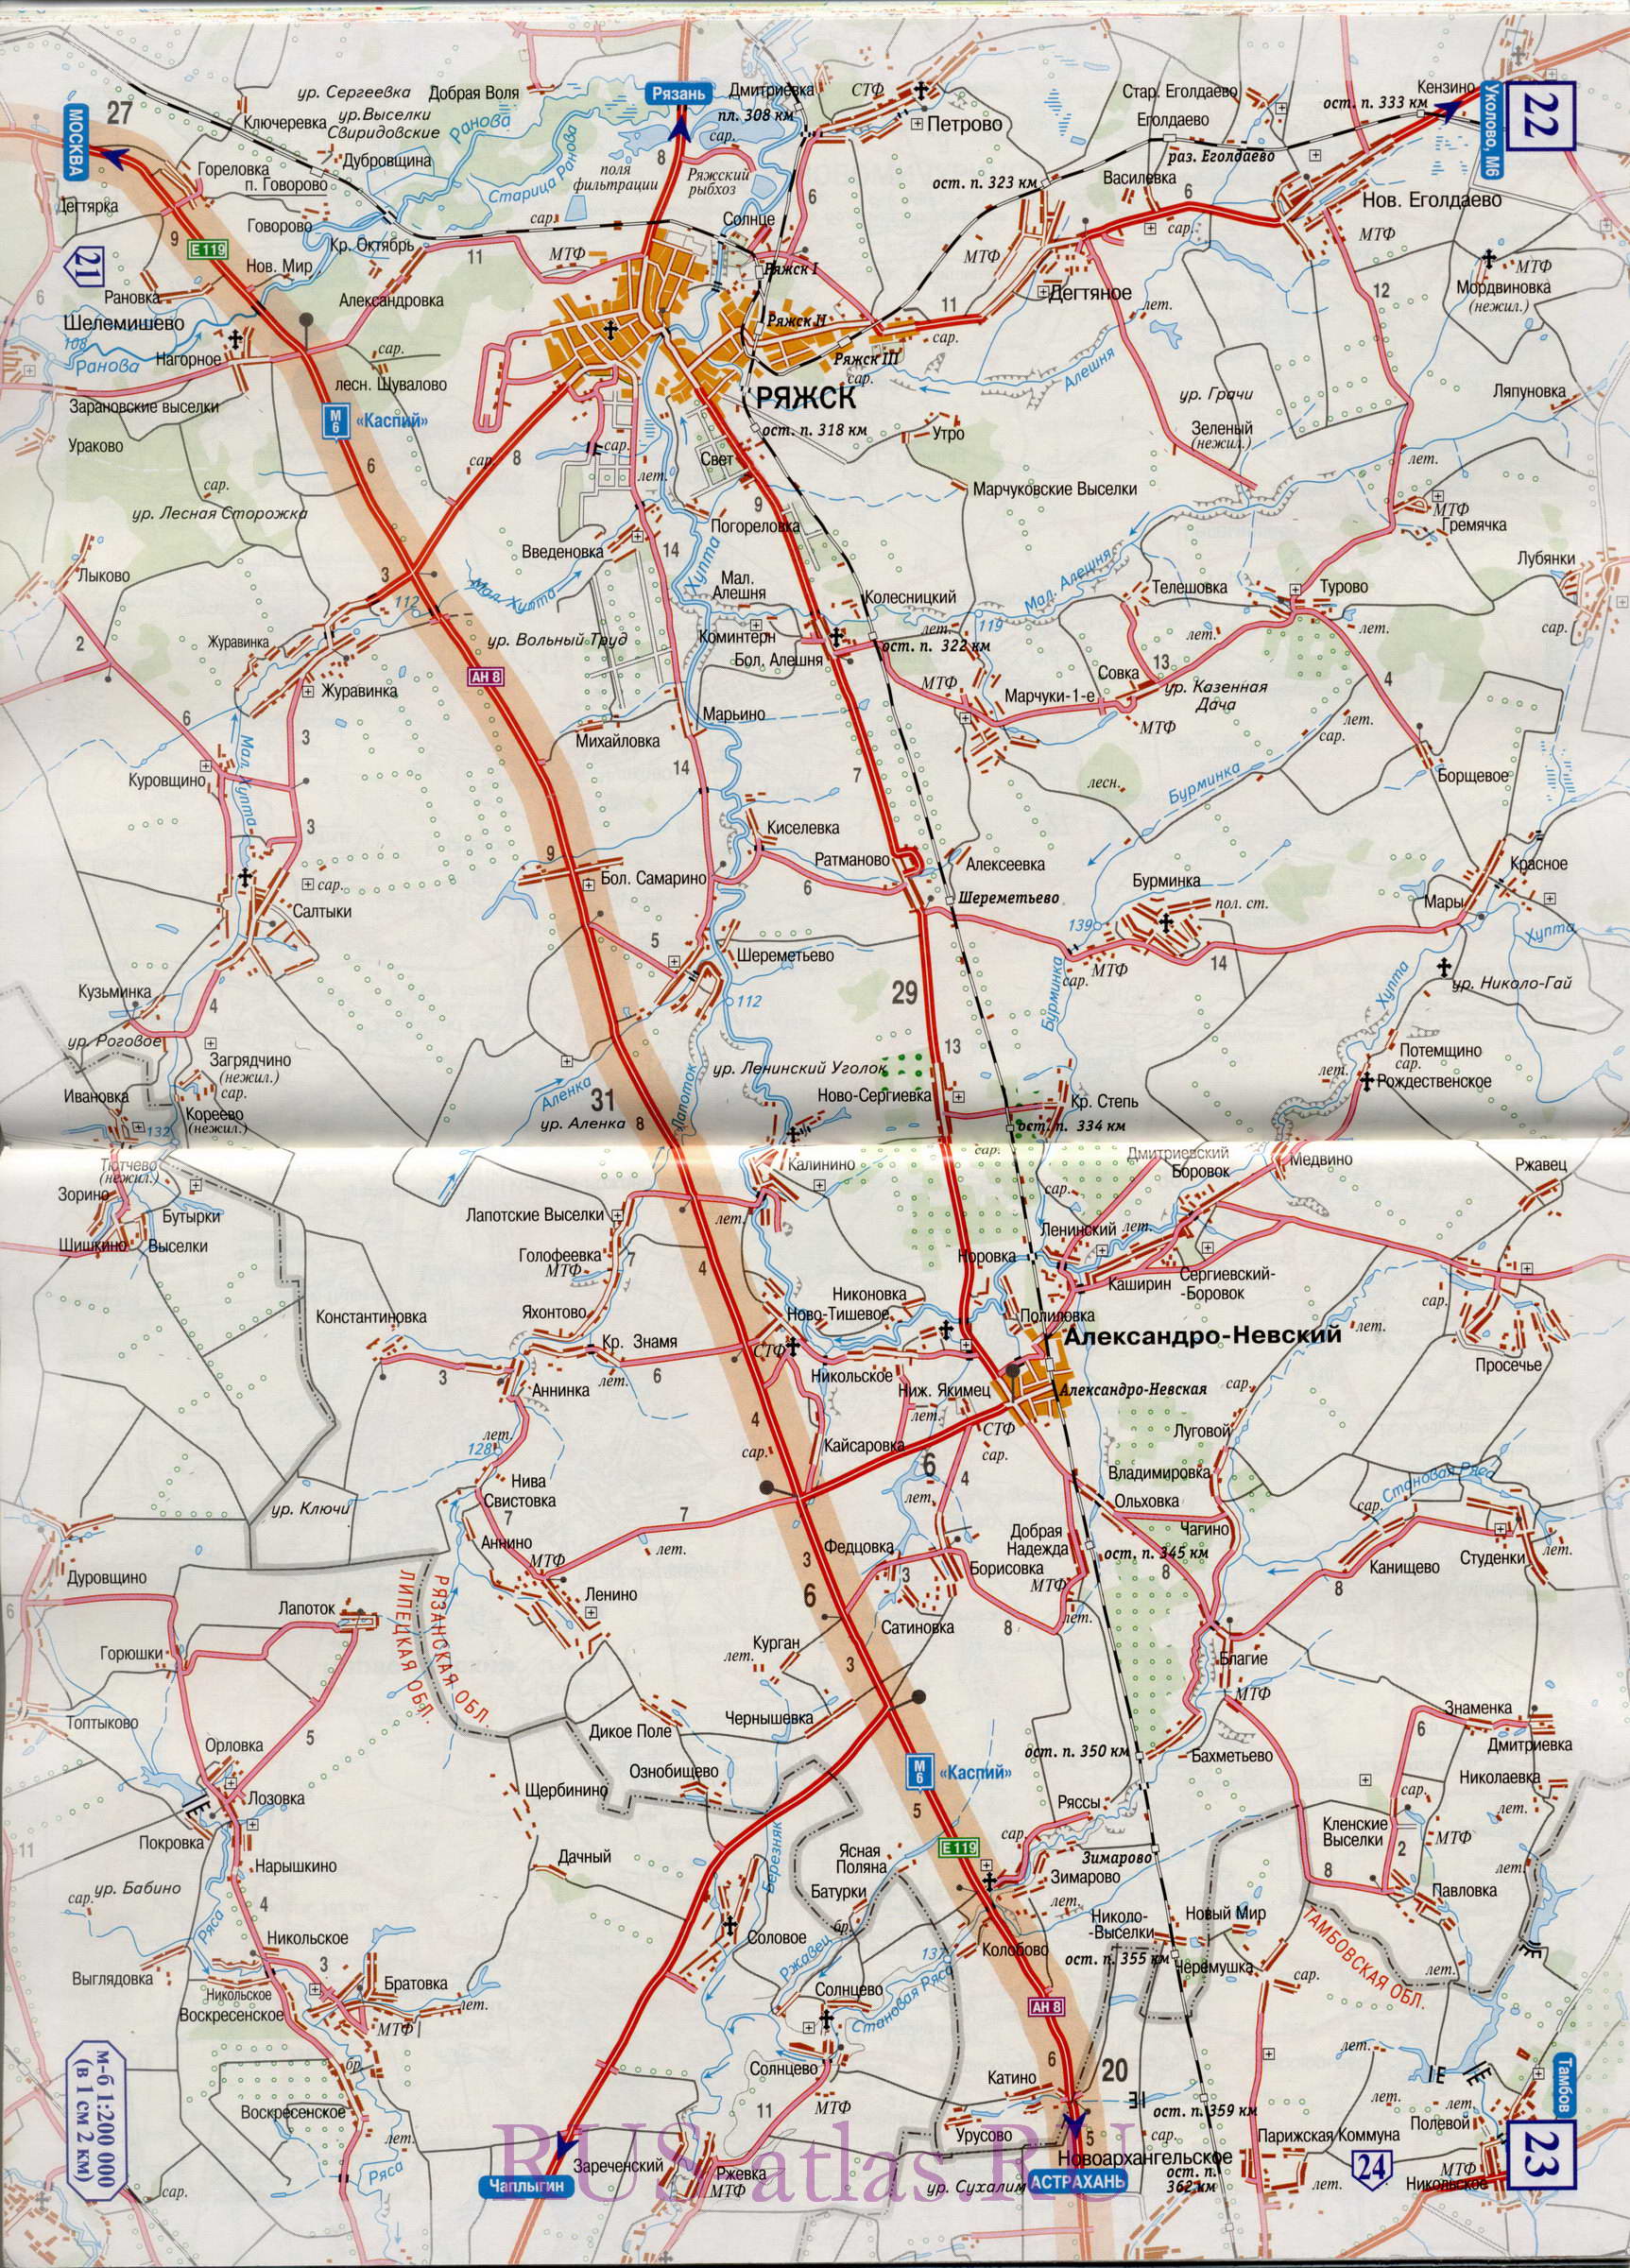 Карта дороги Михайлов-Тамбов. Подробная крупномасштабная карта автомобильной трассы М6 на участке от Михайлова до Тамбова, C0 - 